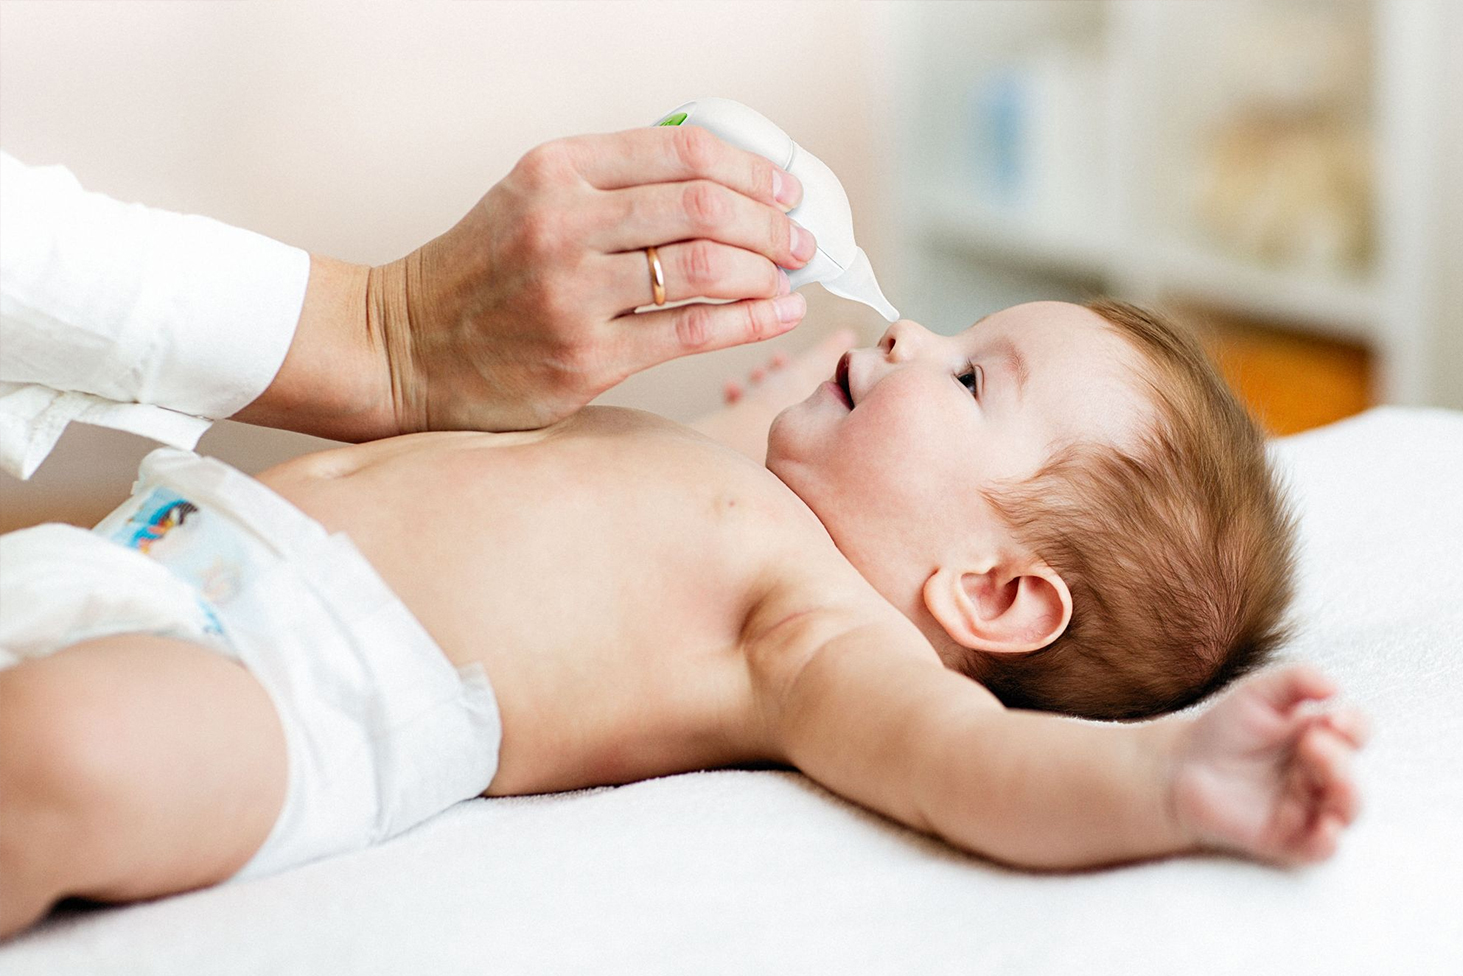 Les enfants de moins de 3 ans ne savent pas se moucher seuls. Un bébé ne respire que par le nez et pas par la bouche aussi la vigilance est de mise car un nez encombré risque d’altérer son alimentation et son sommeil.